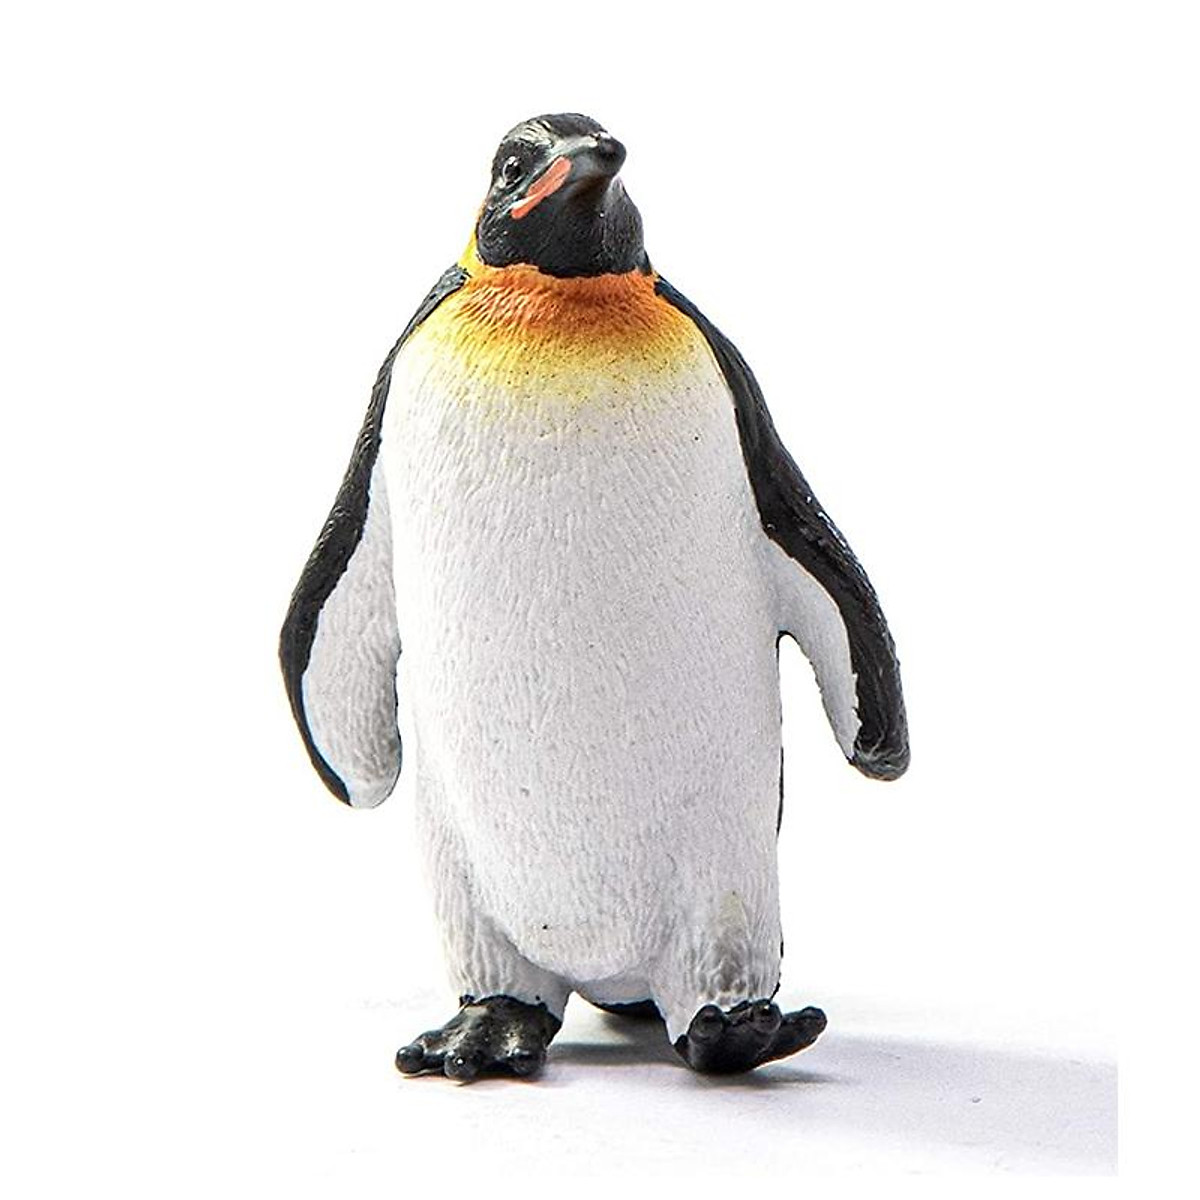 Hình ảnh chim cánh cụt đẹp nhất  Hình ảnh chim Chim cánh cụt Hình ảnh